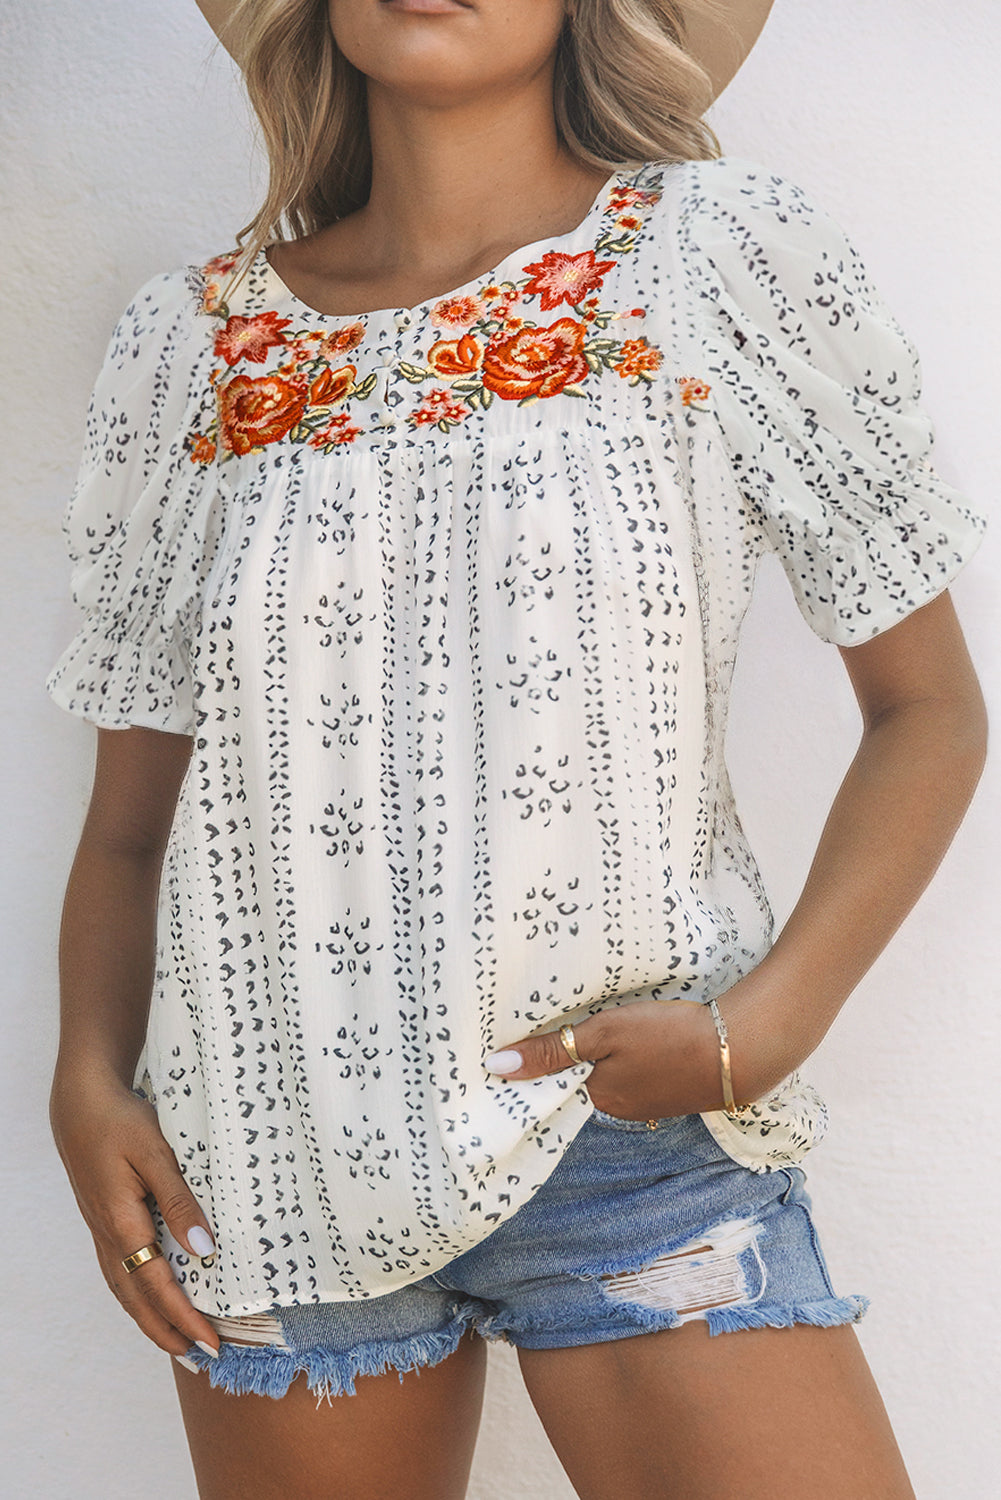 Weiße, mit Blumen bestickte Crinkle-Bluse im ethnischen Stil